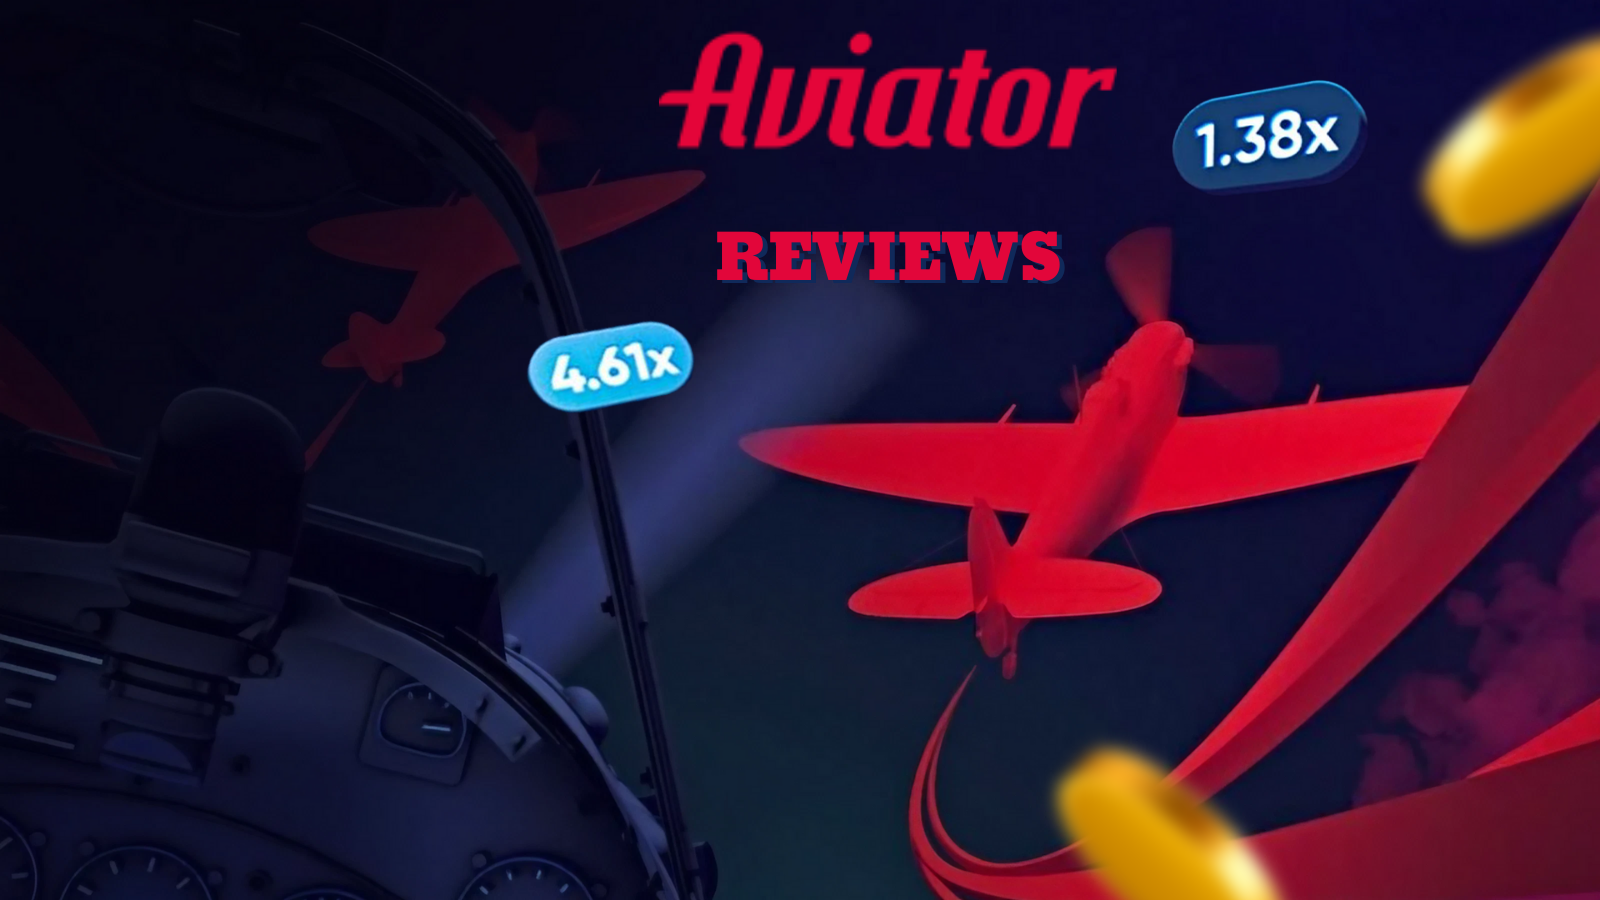 Aviator reviews